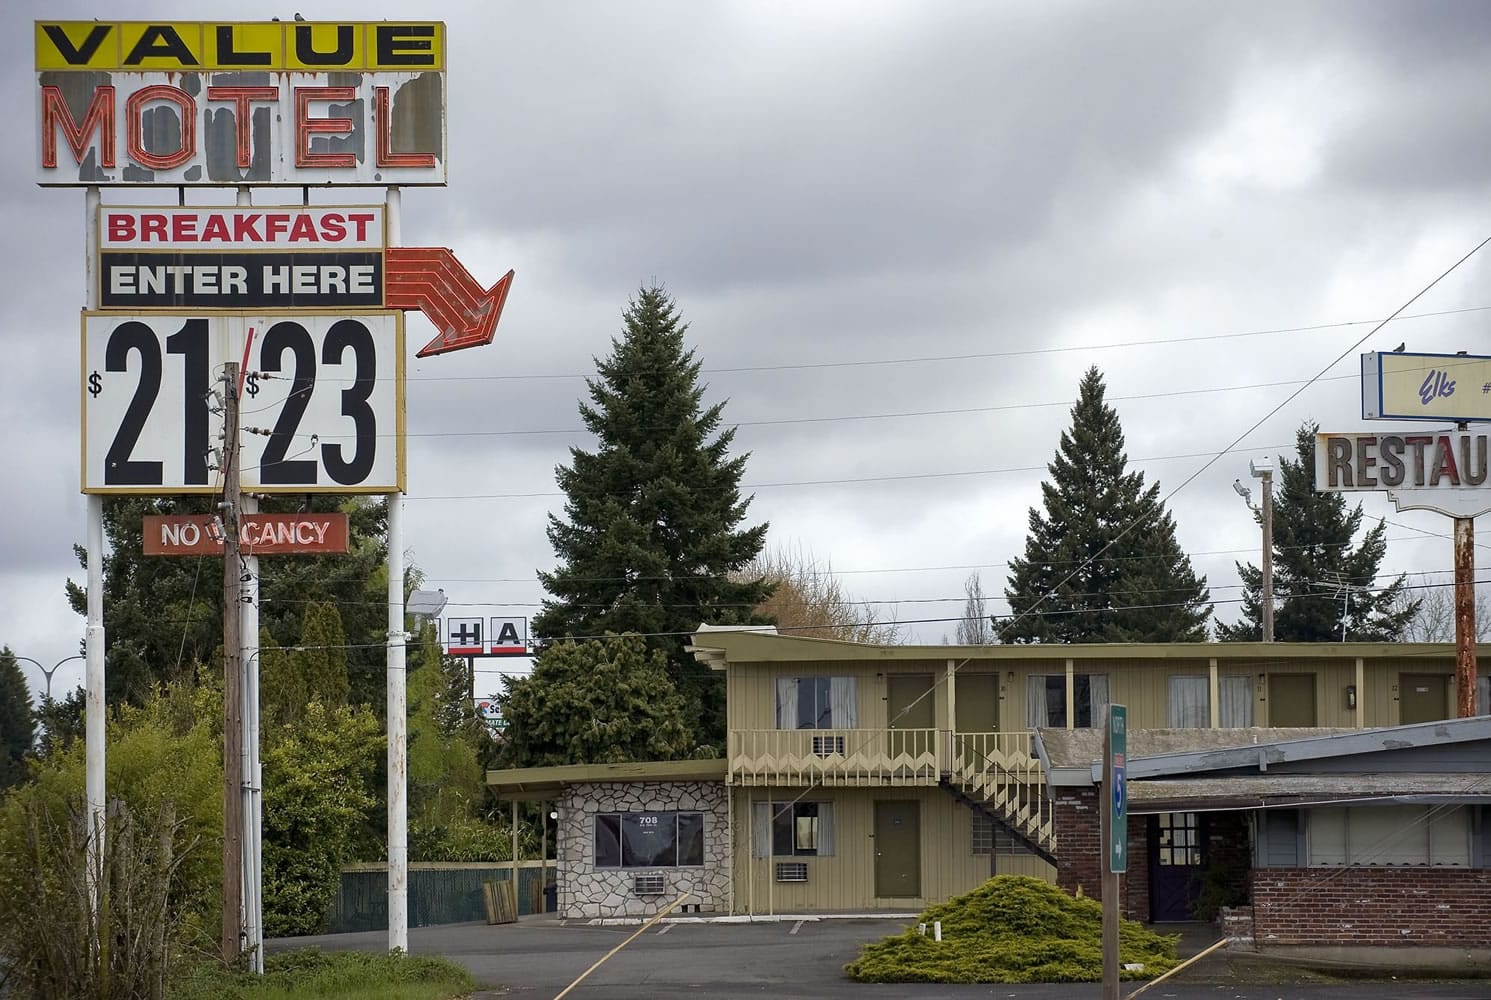 The Value Motel in Hazel Dell.